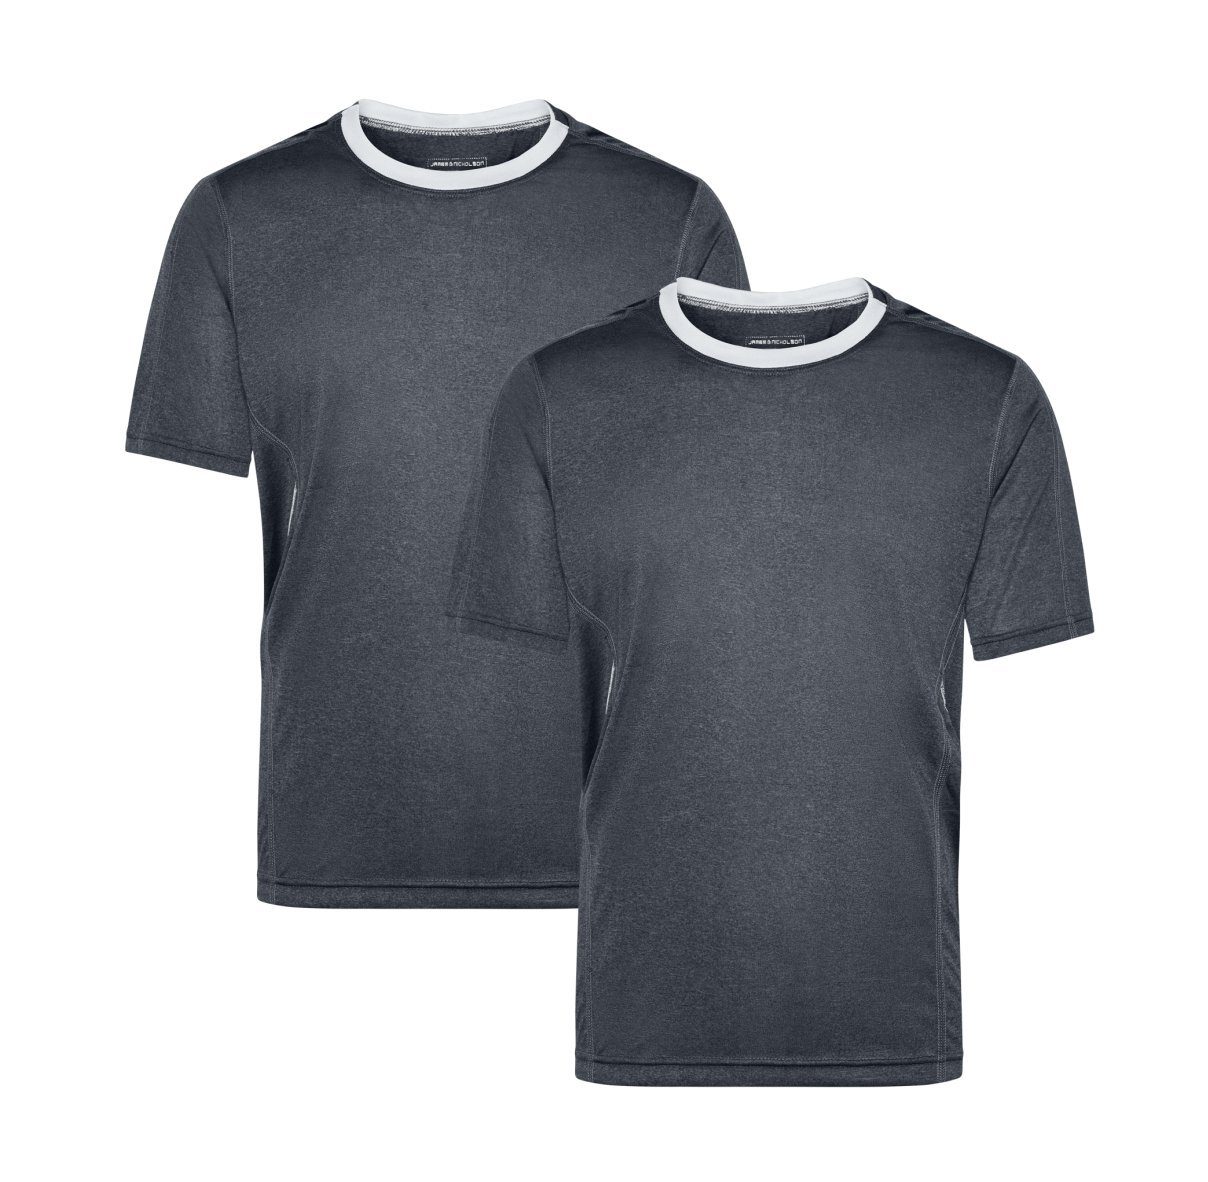 (Doppelpack, Doppelpack 2er-Pack) Laufshirt und Running Nicholson & Feuchtigkeitsregulierend black-melange/white Kurzarm James JN472 Herren T-Shirt Atmungsaktiv Laufshirt